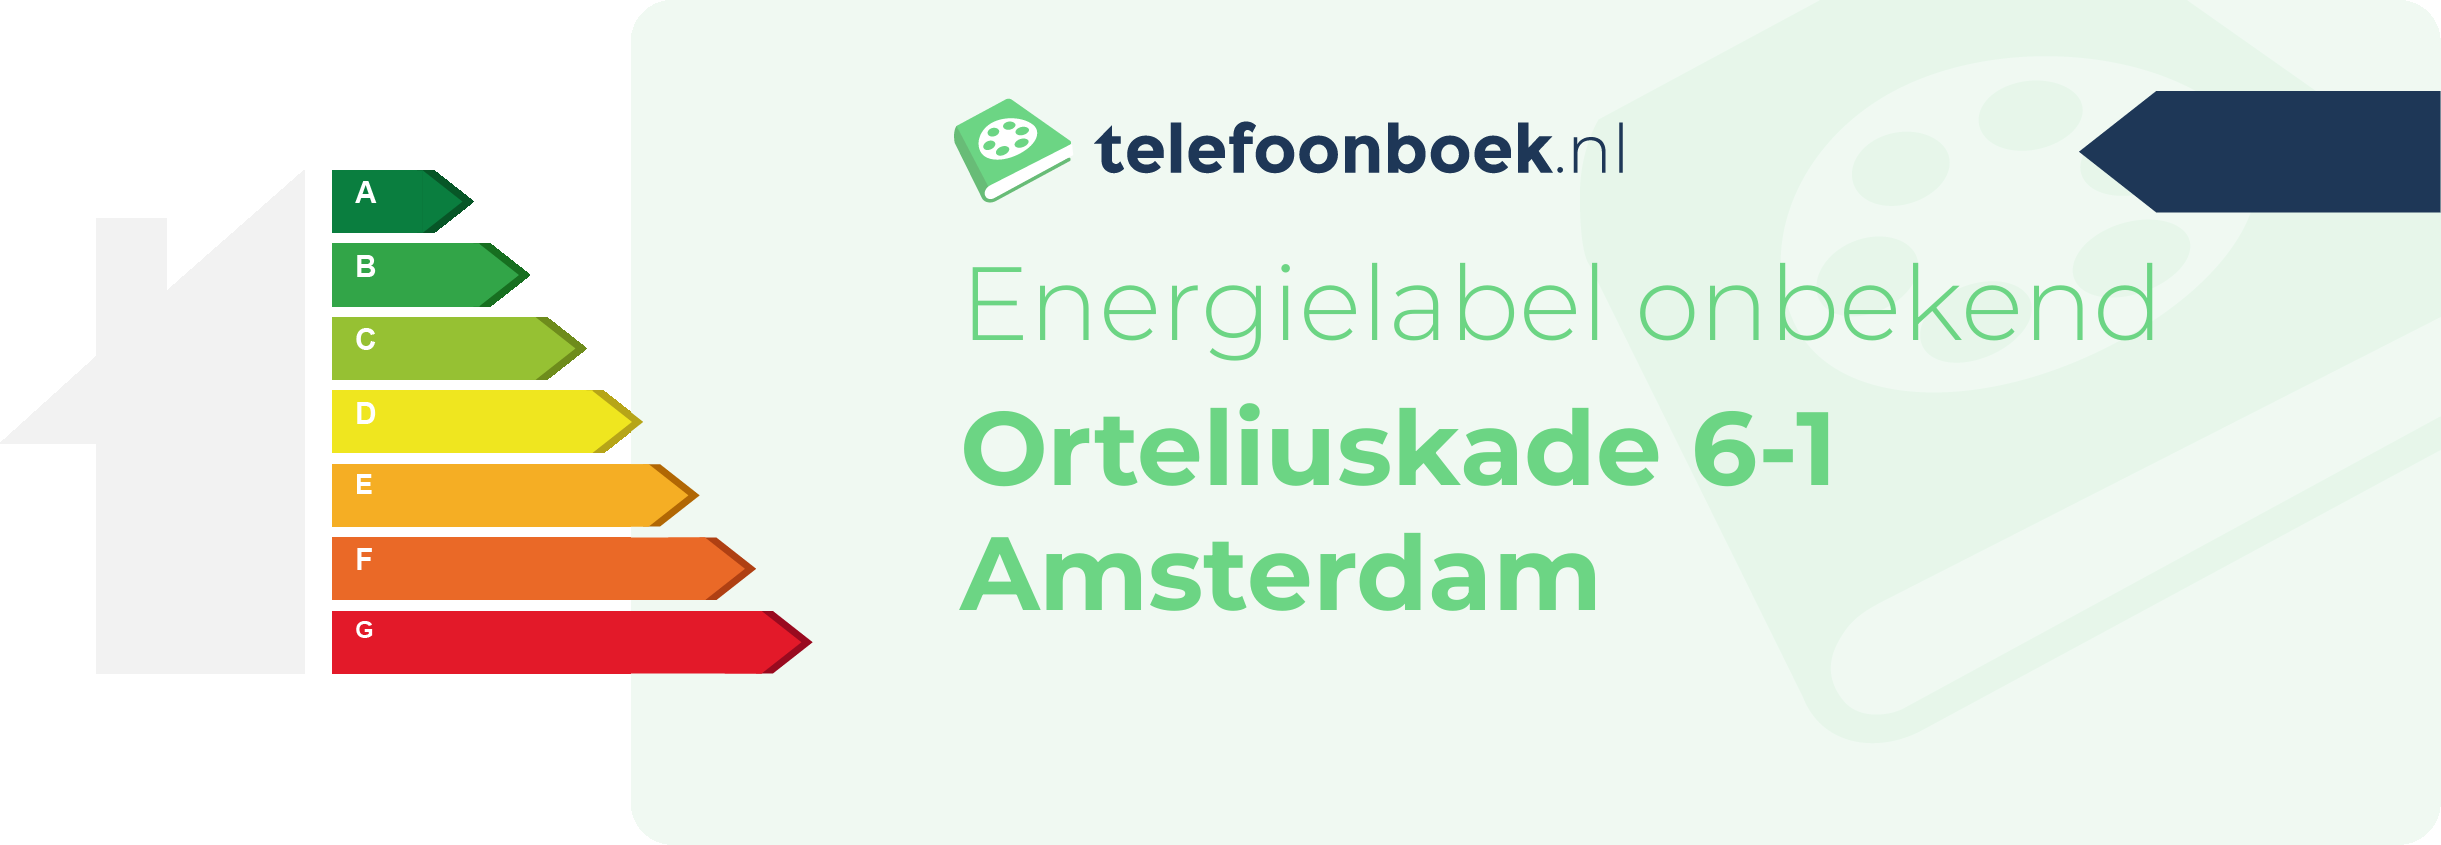 Energielabel Orteliuskade 6-1 Amsterdam